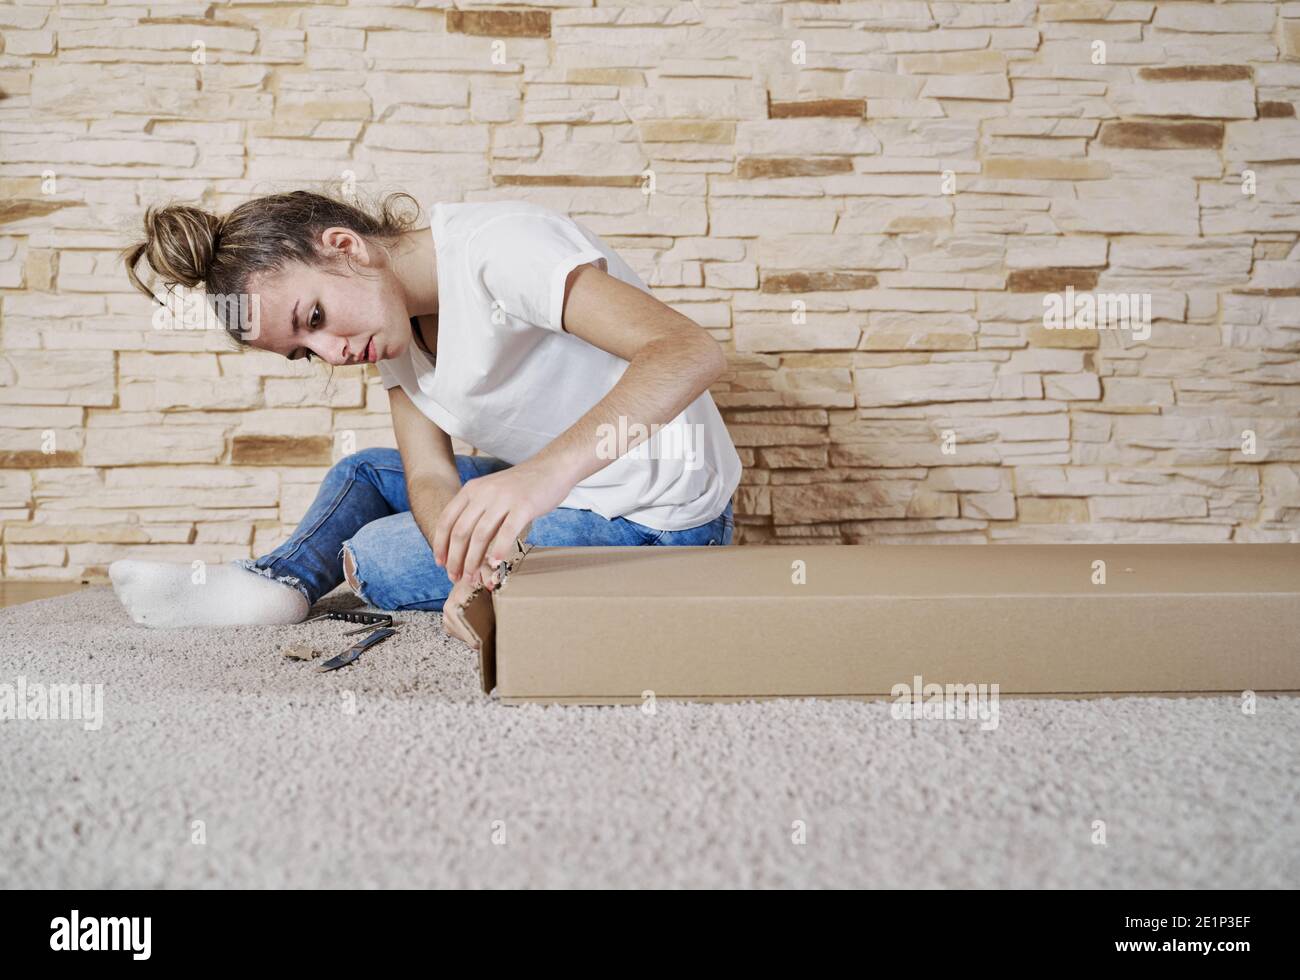 Vorderansicht des Mädchens, das eine Pappkartonschachtel mit einem Messer öffnet. Die Kiste ist auf dem Boden und die Frau sitzt. Horizontales Foto Stockfoto